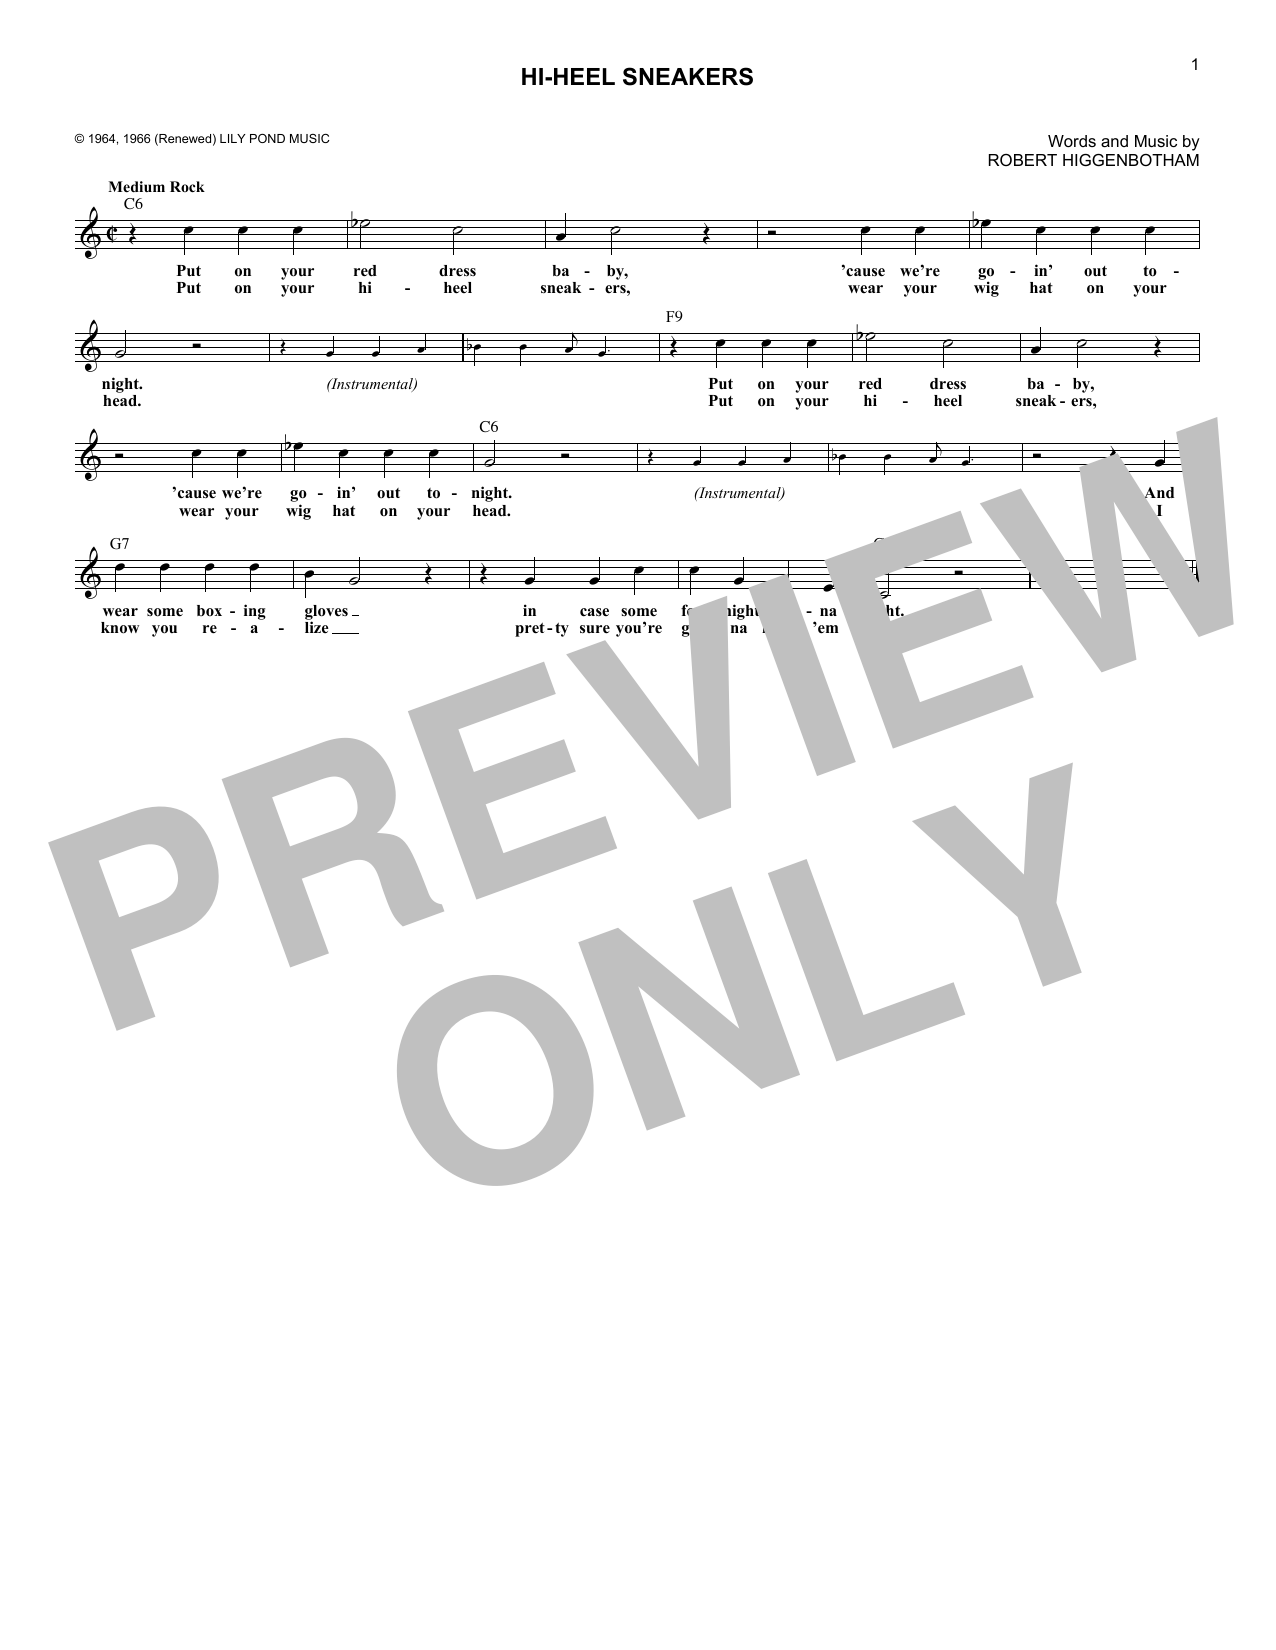 Stevie Wonder "Hi-Heel Sneakers" Sheet Music PDF Notes, Chords Rock Score Lead Sheet Book Download Printable. SKU: 182685